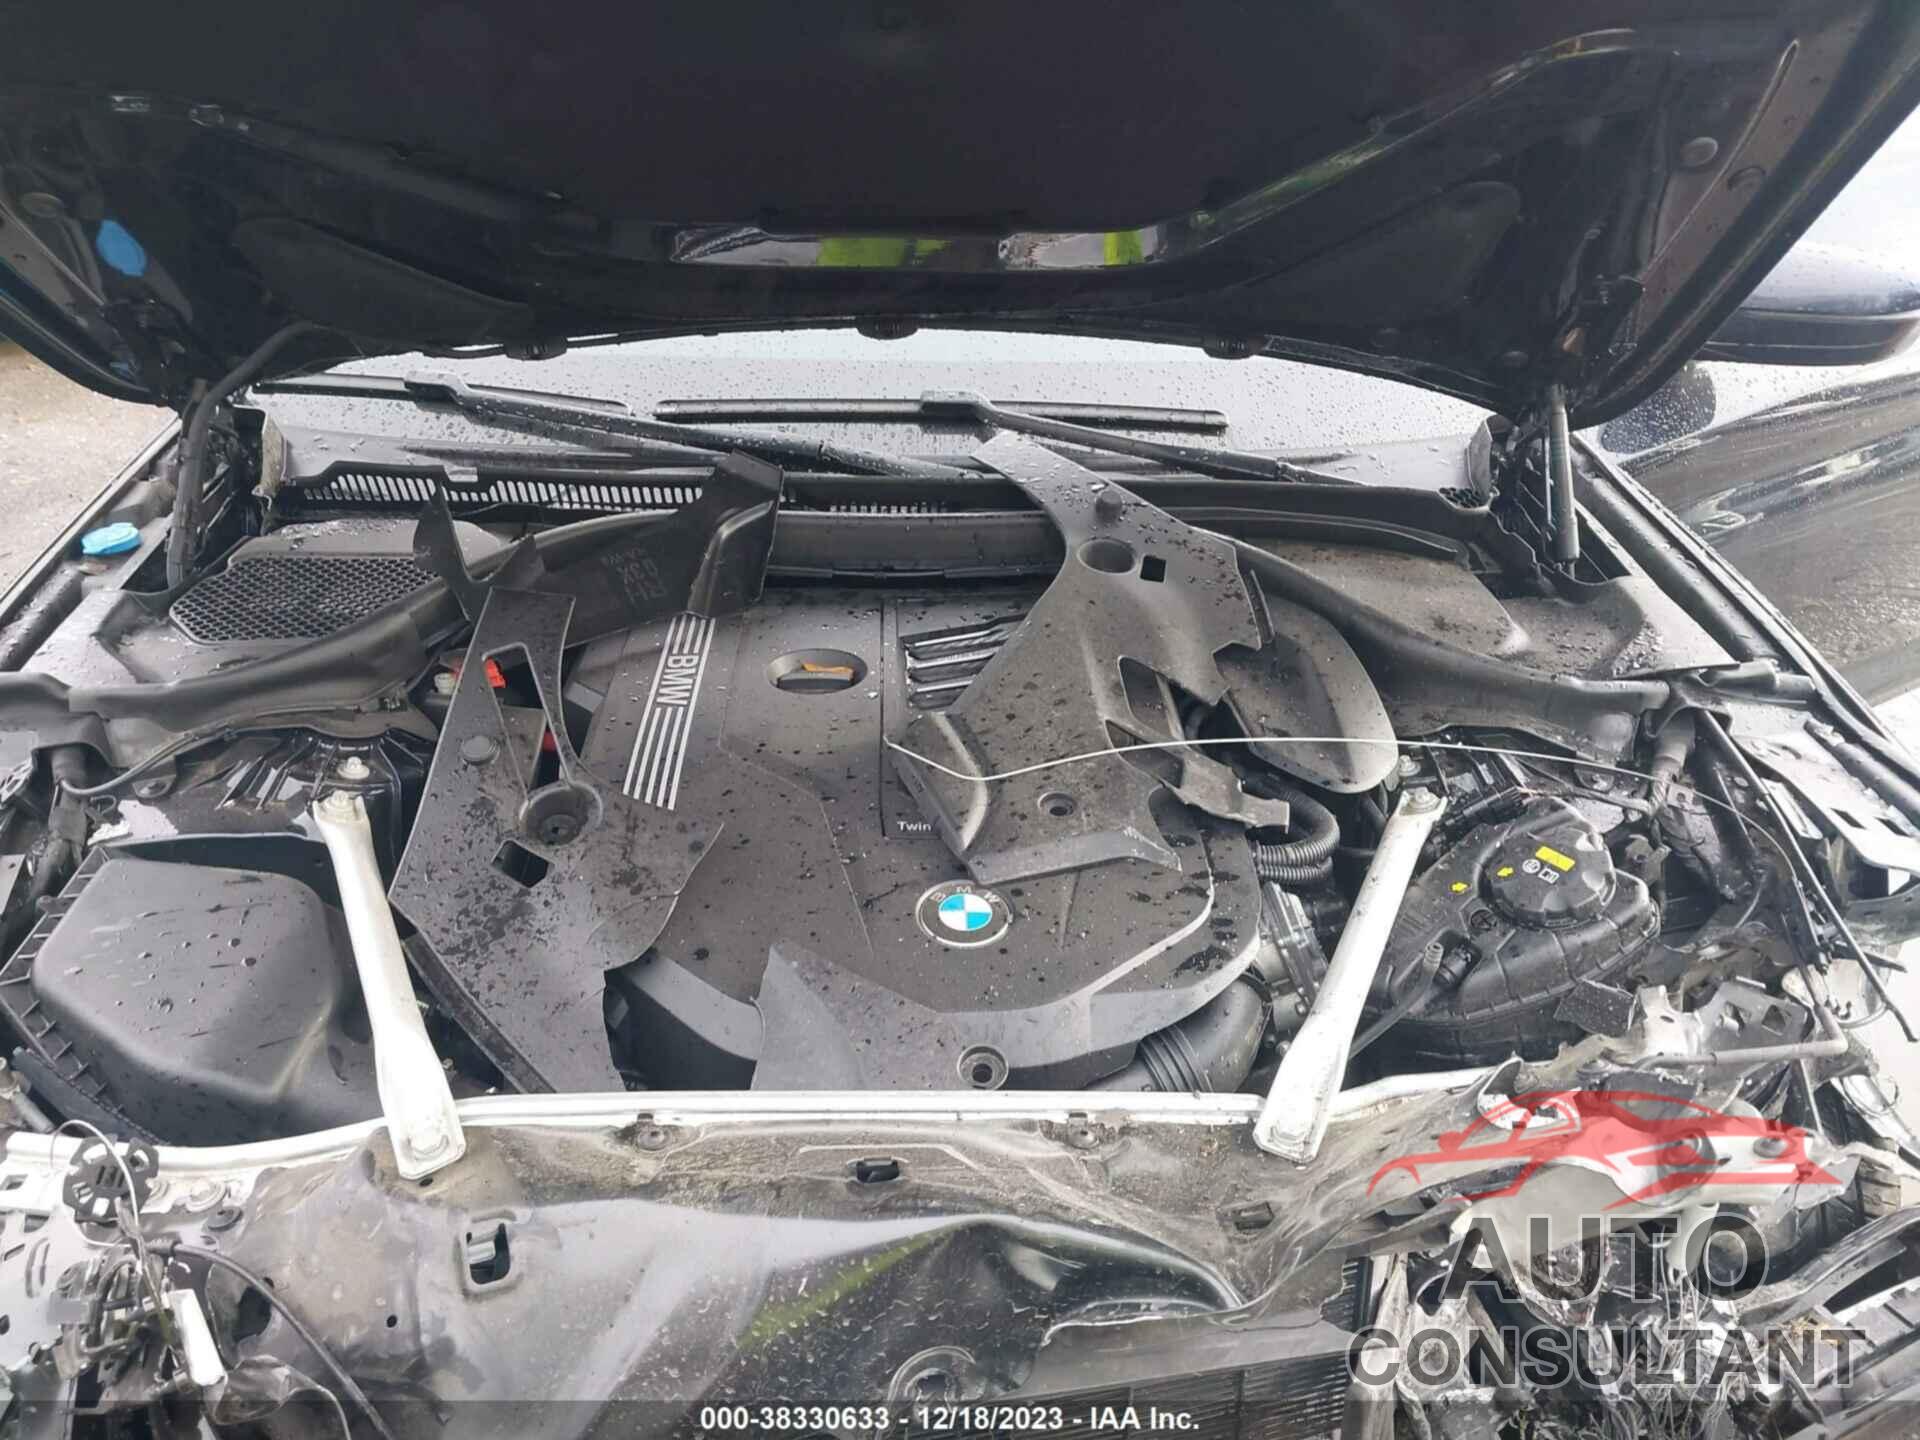 BMW 540 2020 - WBAJS3C00LCE00235